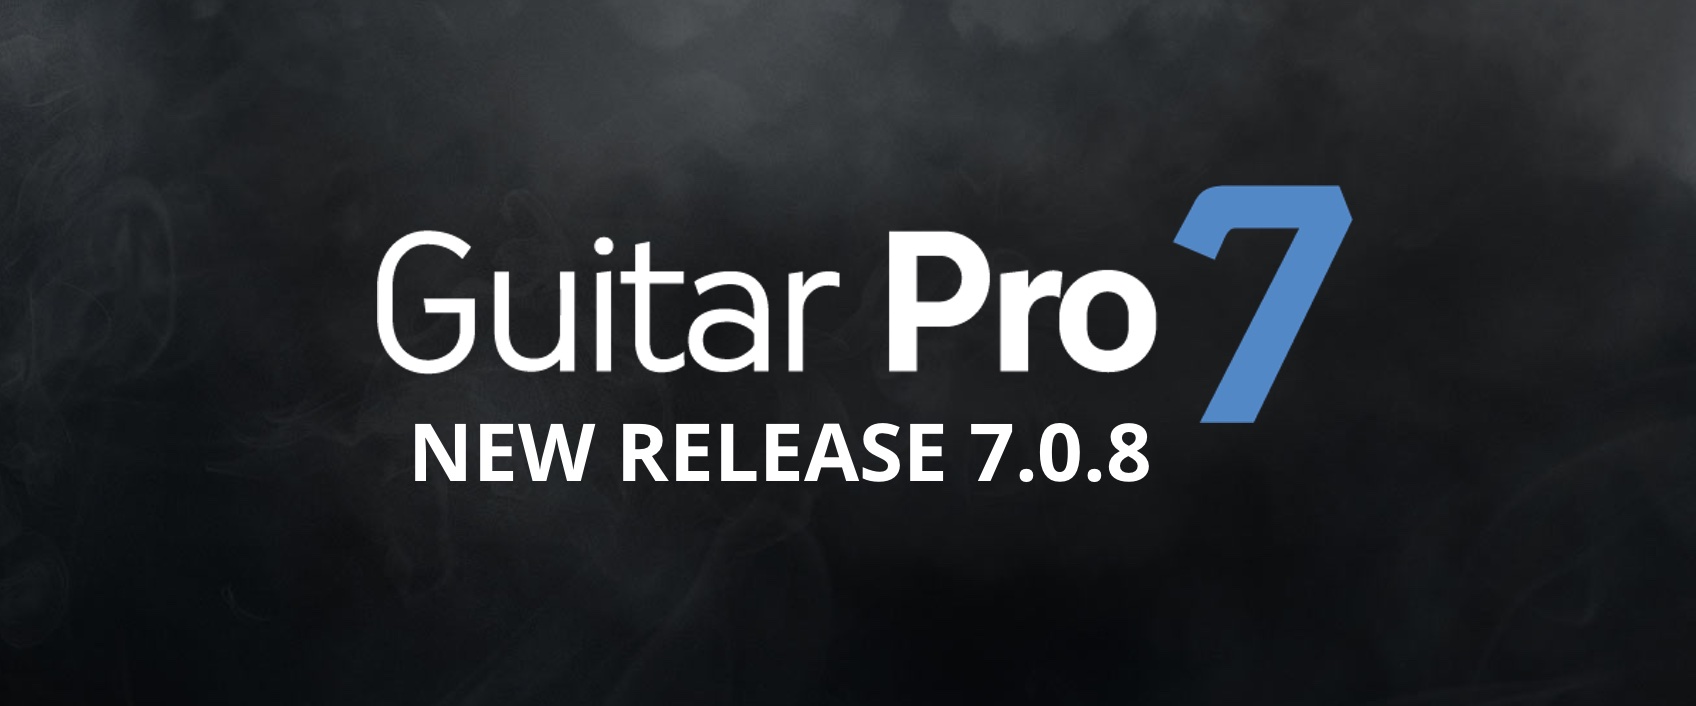 guitar pro 7 download free